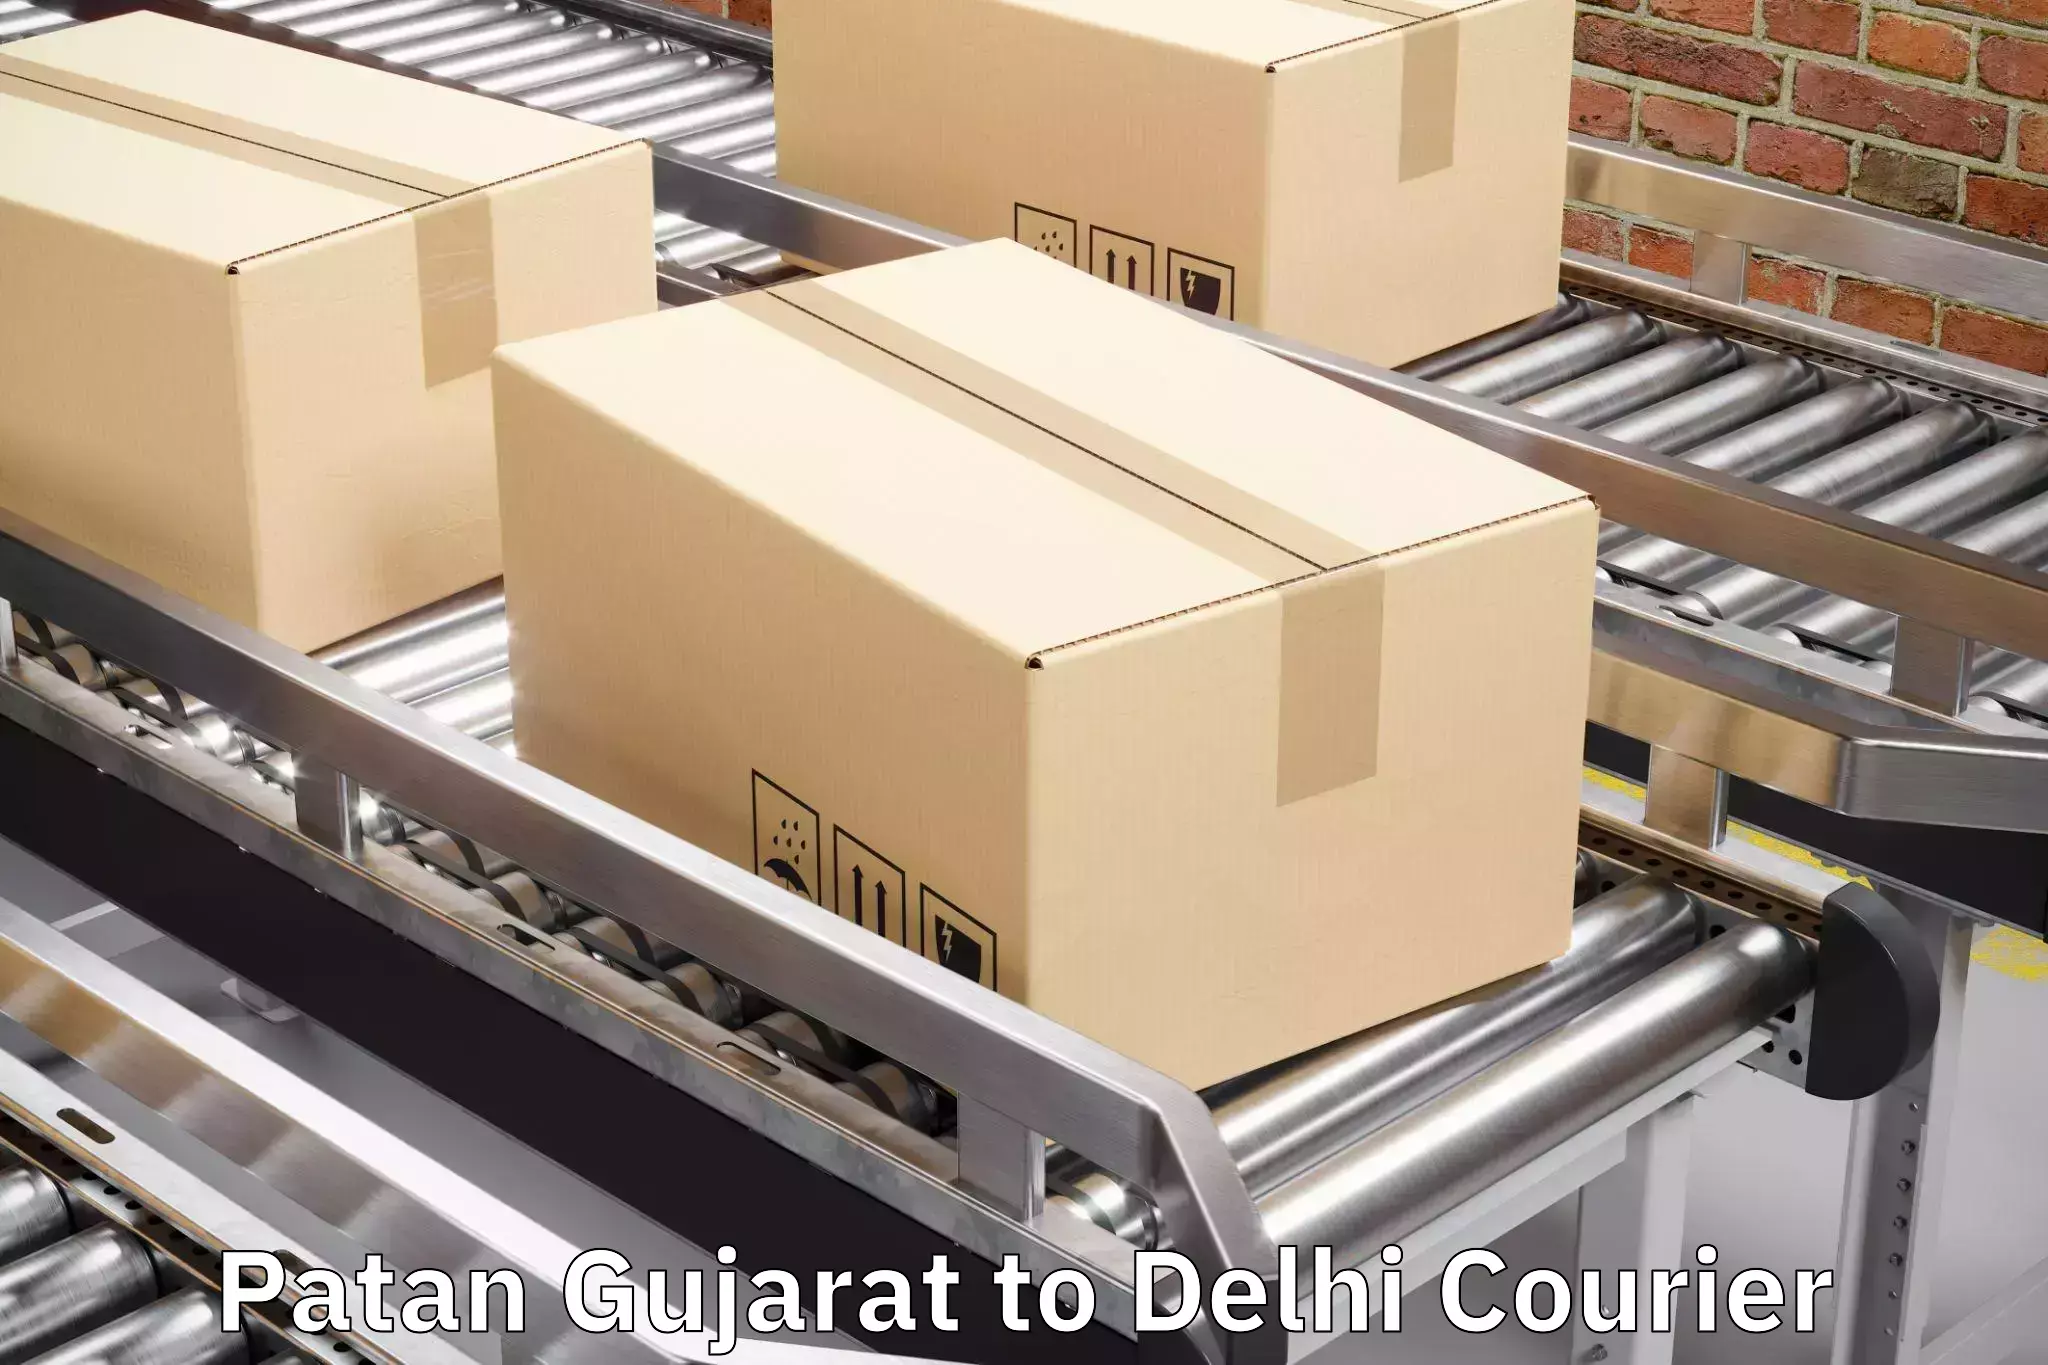 Luggage transit service Patan Gujarat to Kalkaji